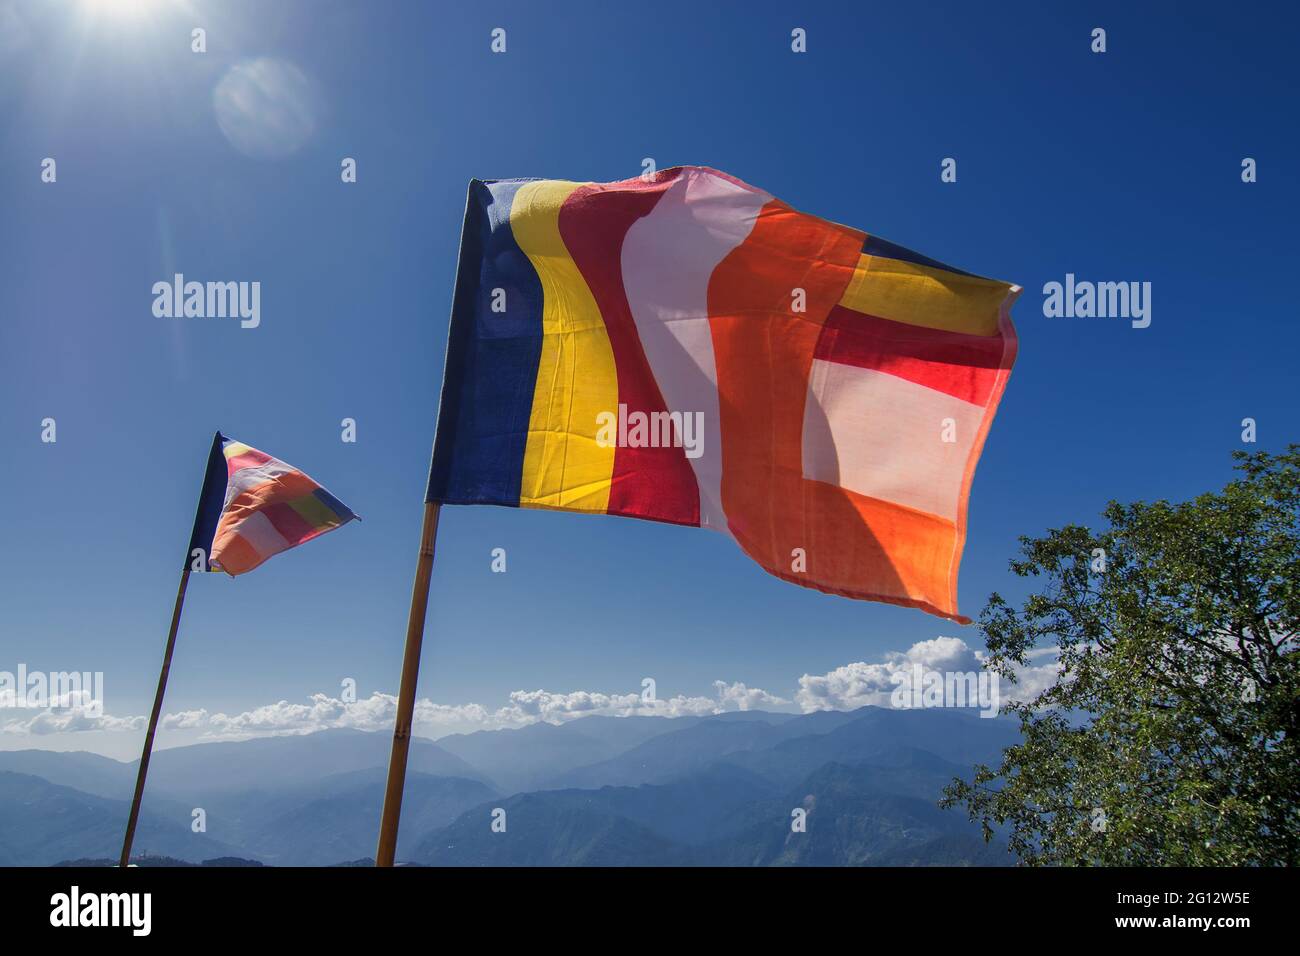 Les drapeaux bouddhistes de prière de Coluourful sont agités sous un vent fort sous le soleil à Samdruptse, l'énorme monastère bouddhiste mémorial à Sikkim, Inde. Banque D'Images